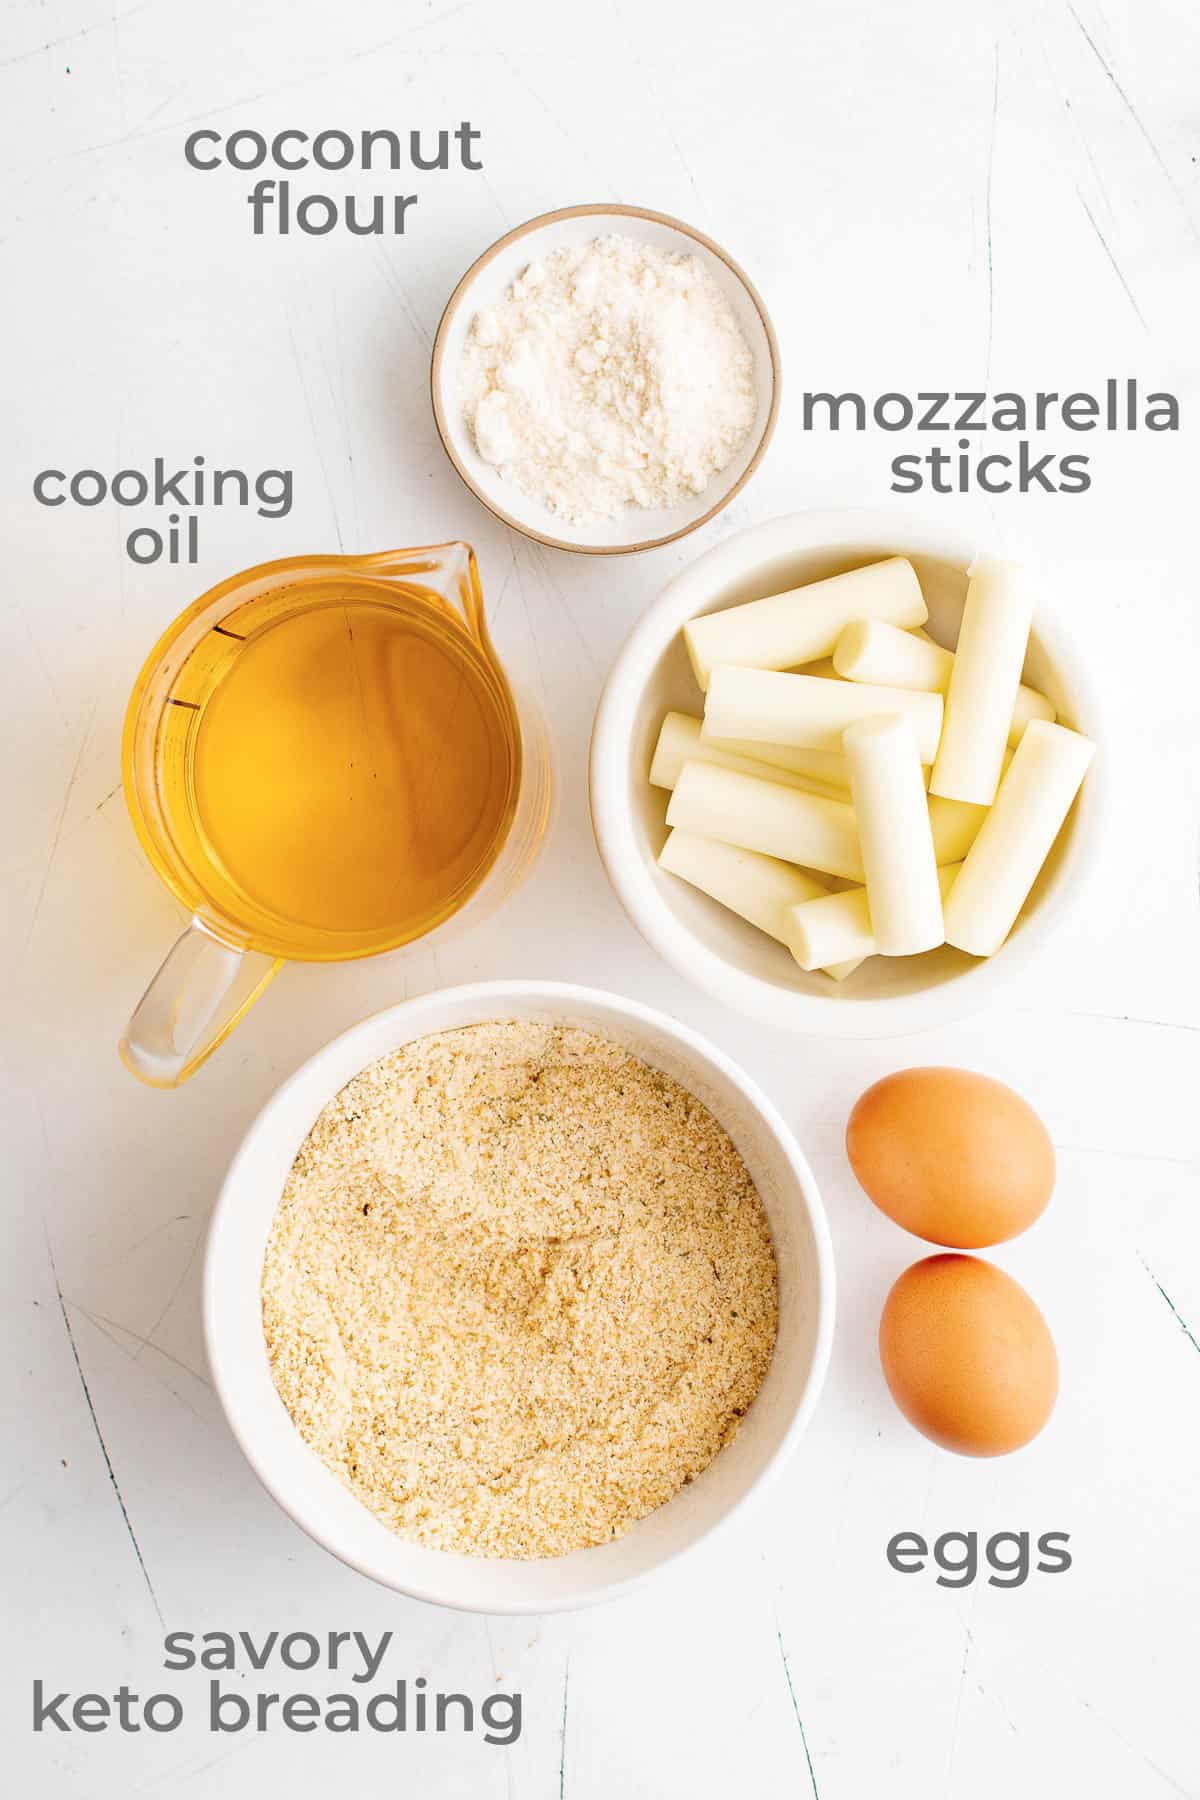 Ingredients for mozzarella cheese sticks - coconut flour, eggs, oil, keto breading